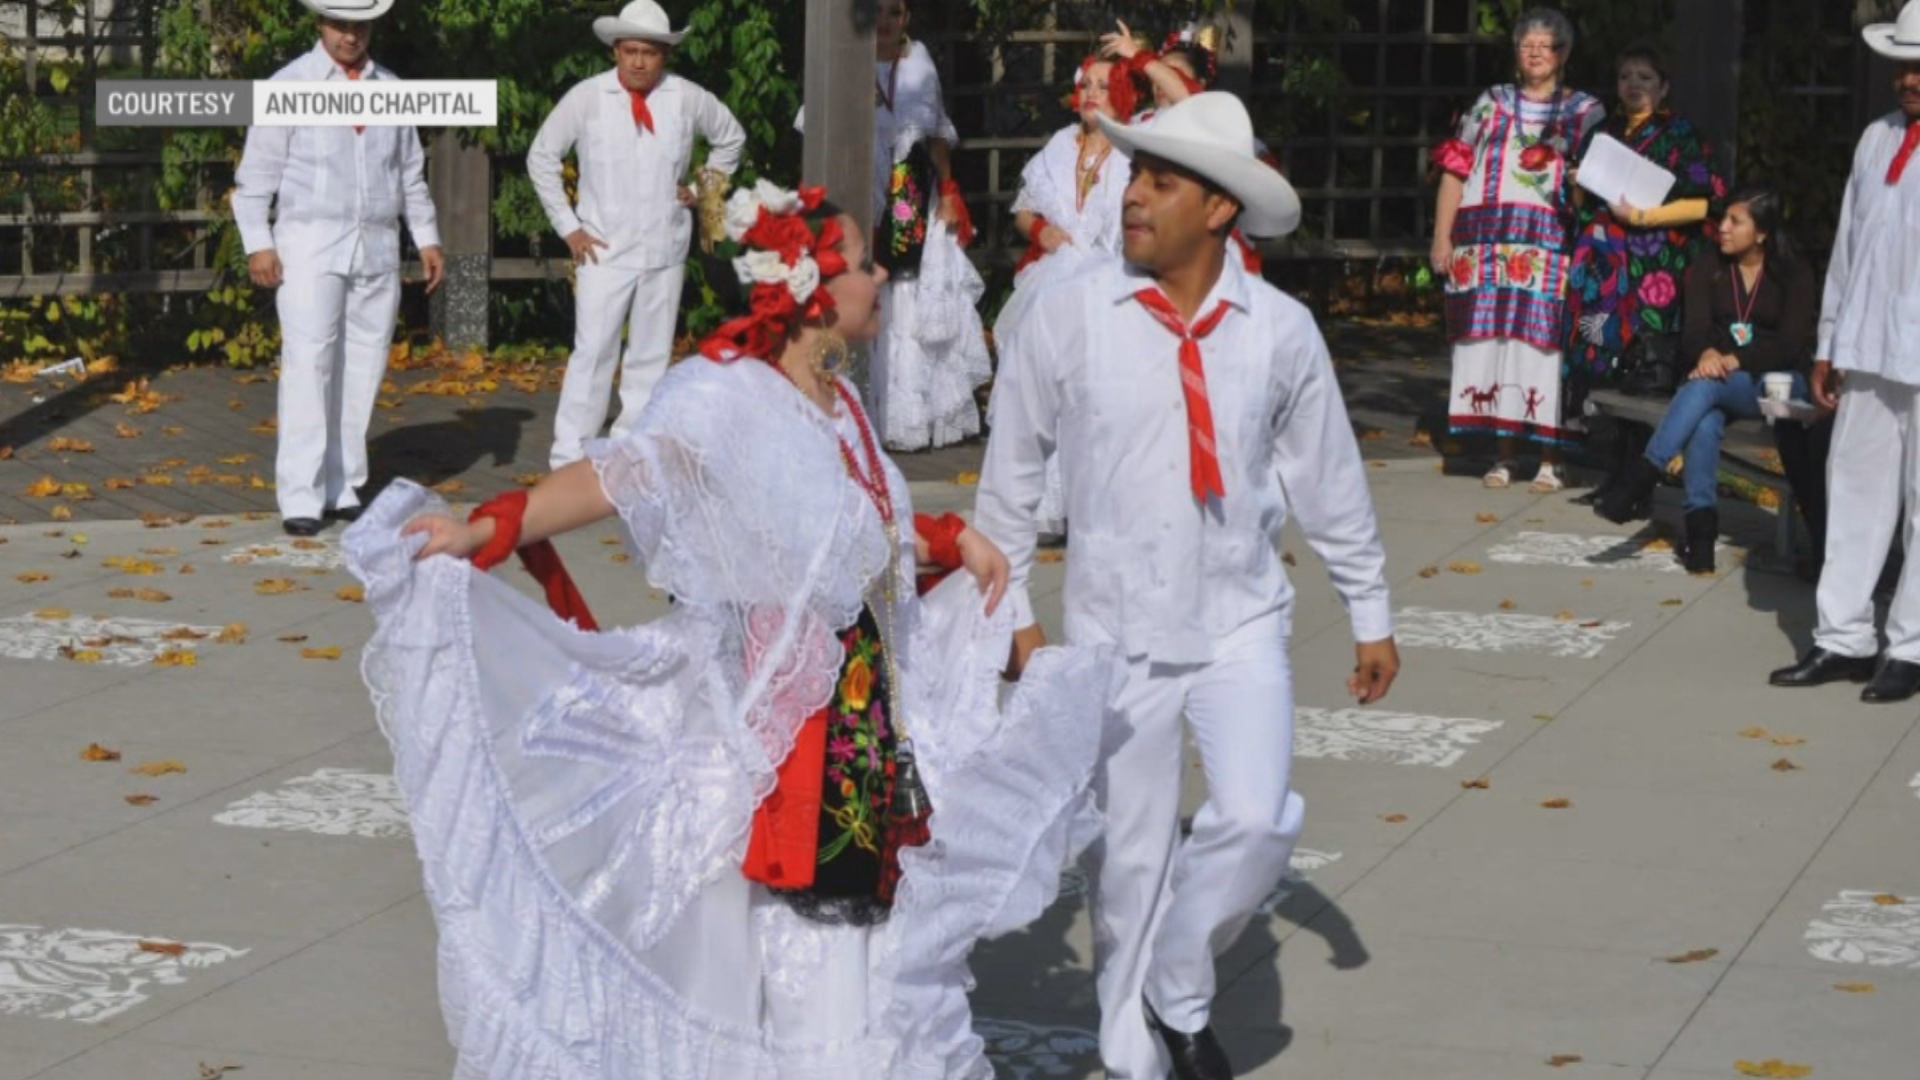 Ensamble Folkórico Indianapolis keeps Mexican traditions alive